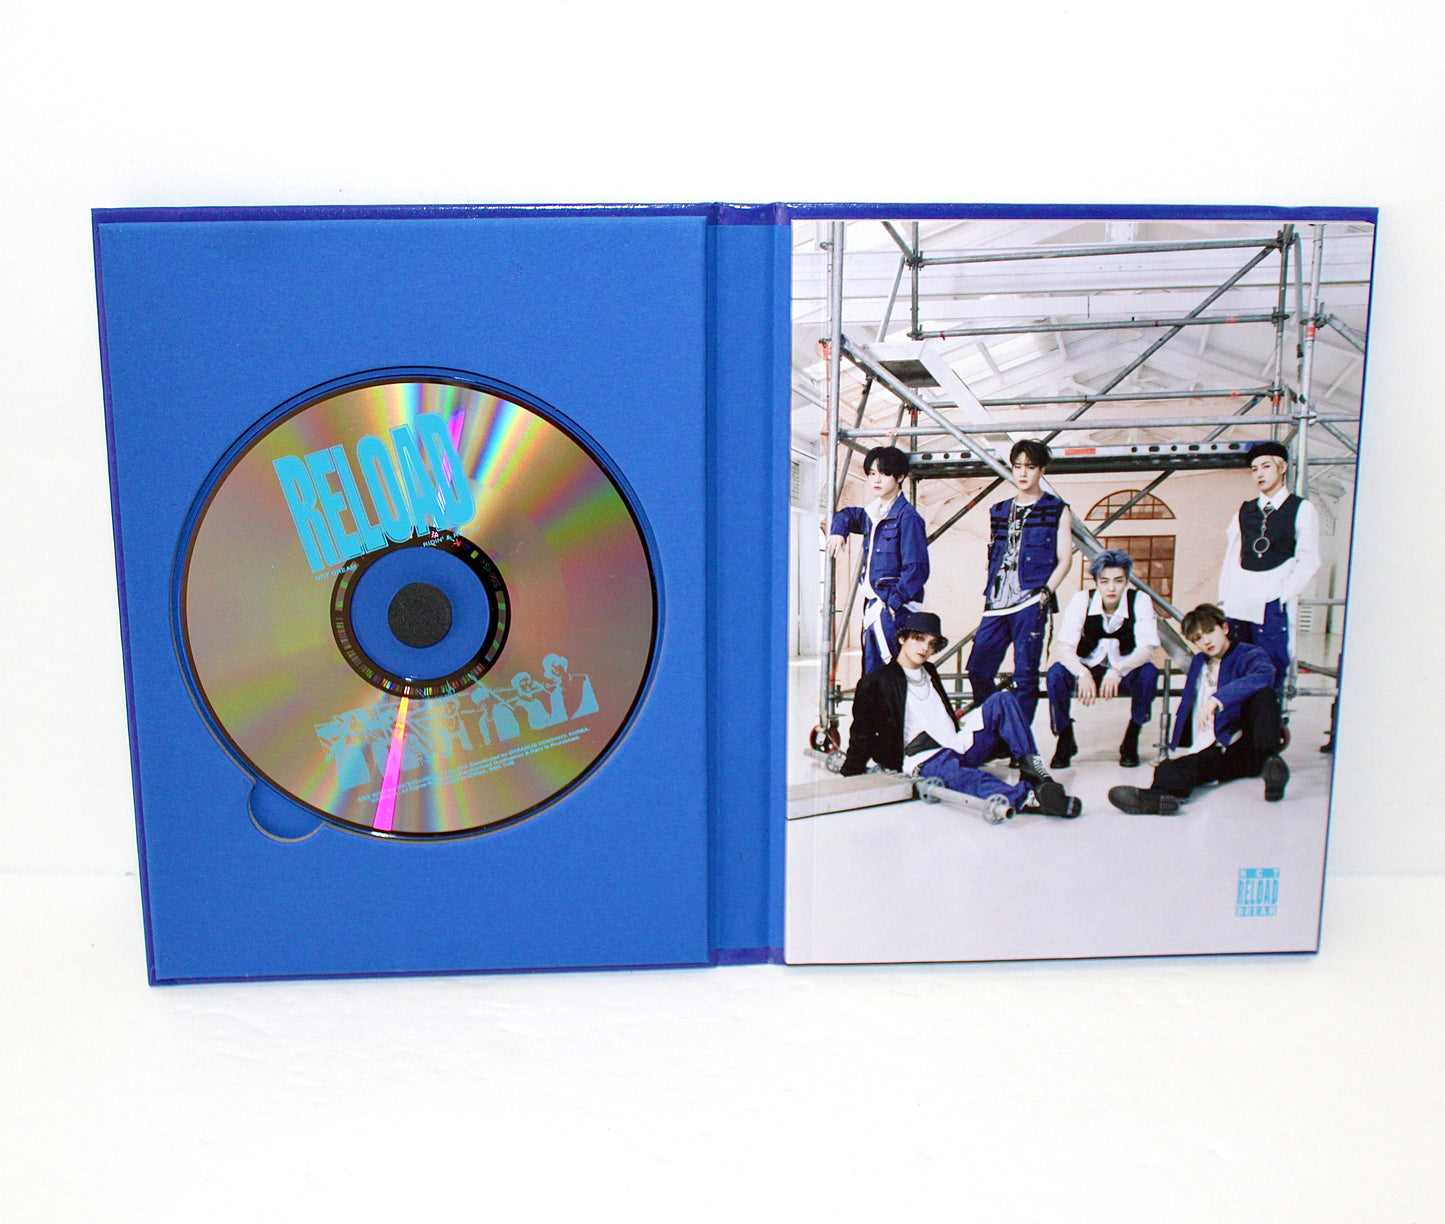 NCT DREAM 4th Mini Album: RELOAD | Rollin' Ver.